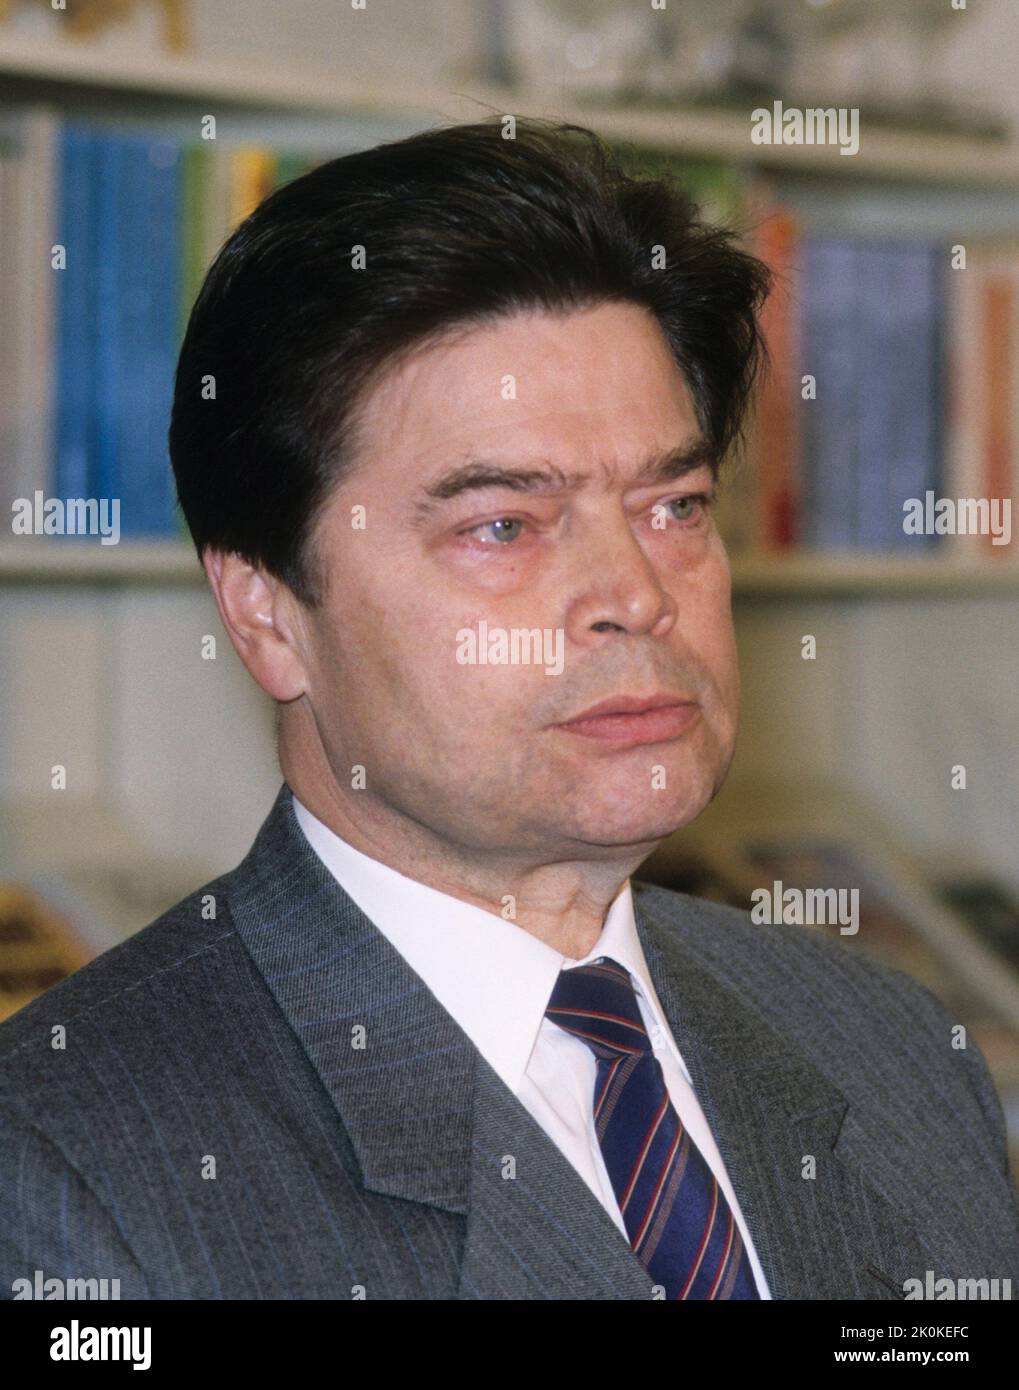 Boris Pankin ambasciatore sovietico in Svezia che dopo la caduta dell'Unione Sovietica rimase indietro e si stabilì in Svezia. Foto Stock